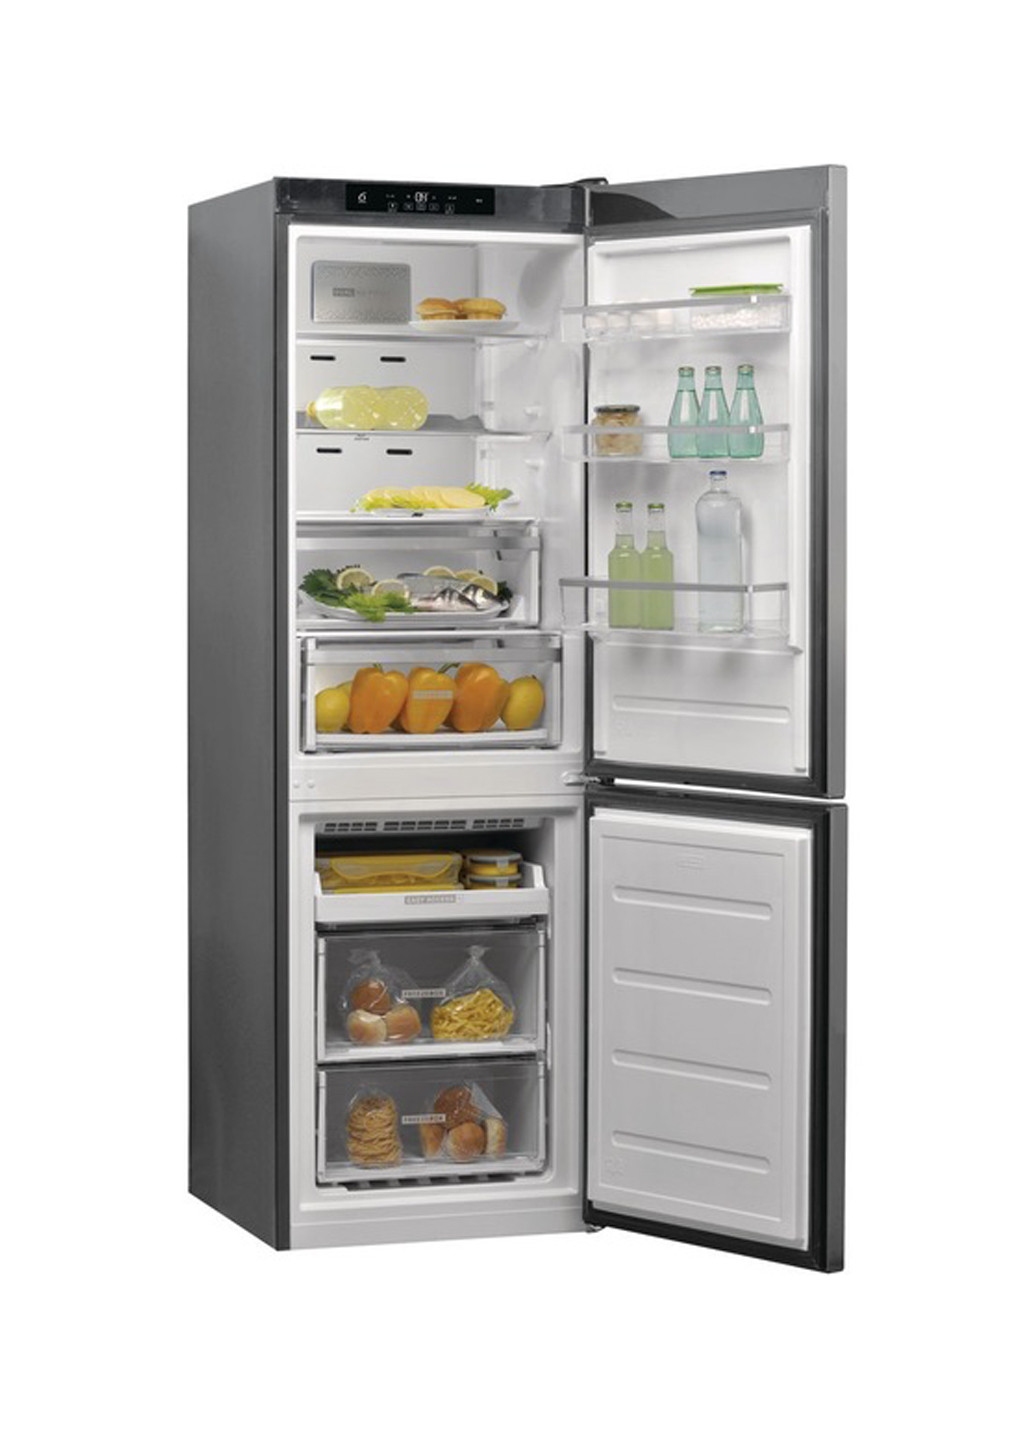 Холодильник комби WHIRLPOOL W9 821C OX